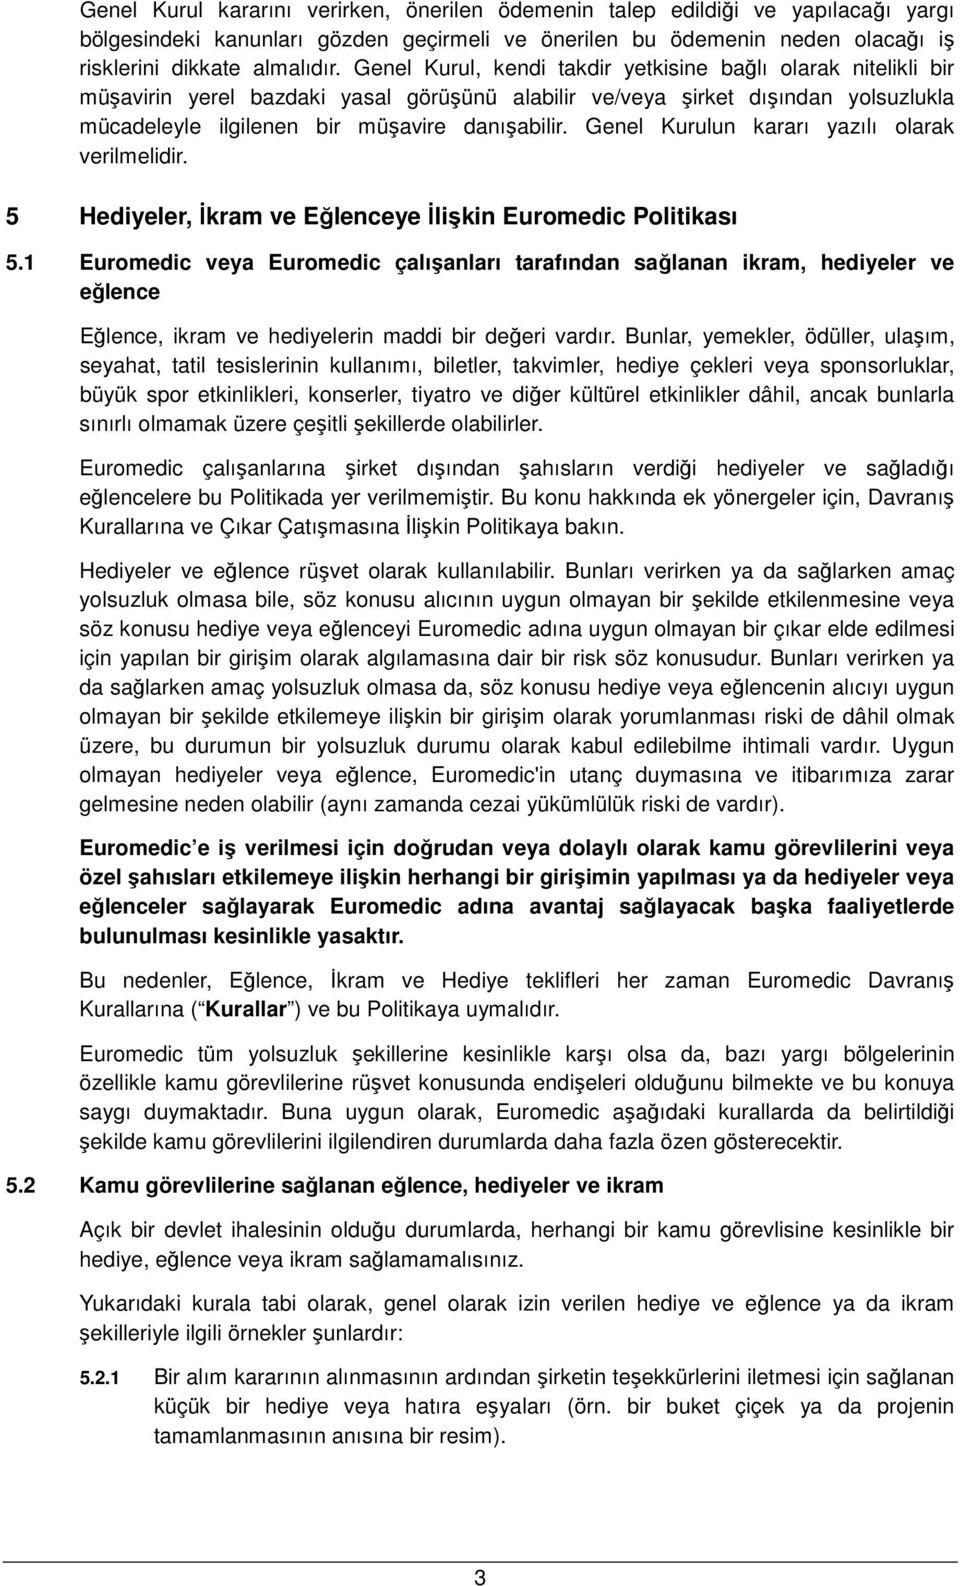 Genel Kurulun kararı yazılı olarak verilmelidir. 5 Hediyeler, Đkram ve Eğlenceye Đlişkin Euromedic Politikası 5.